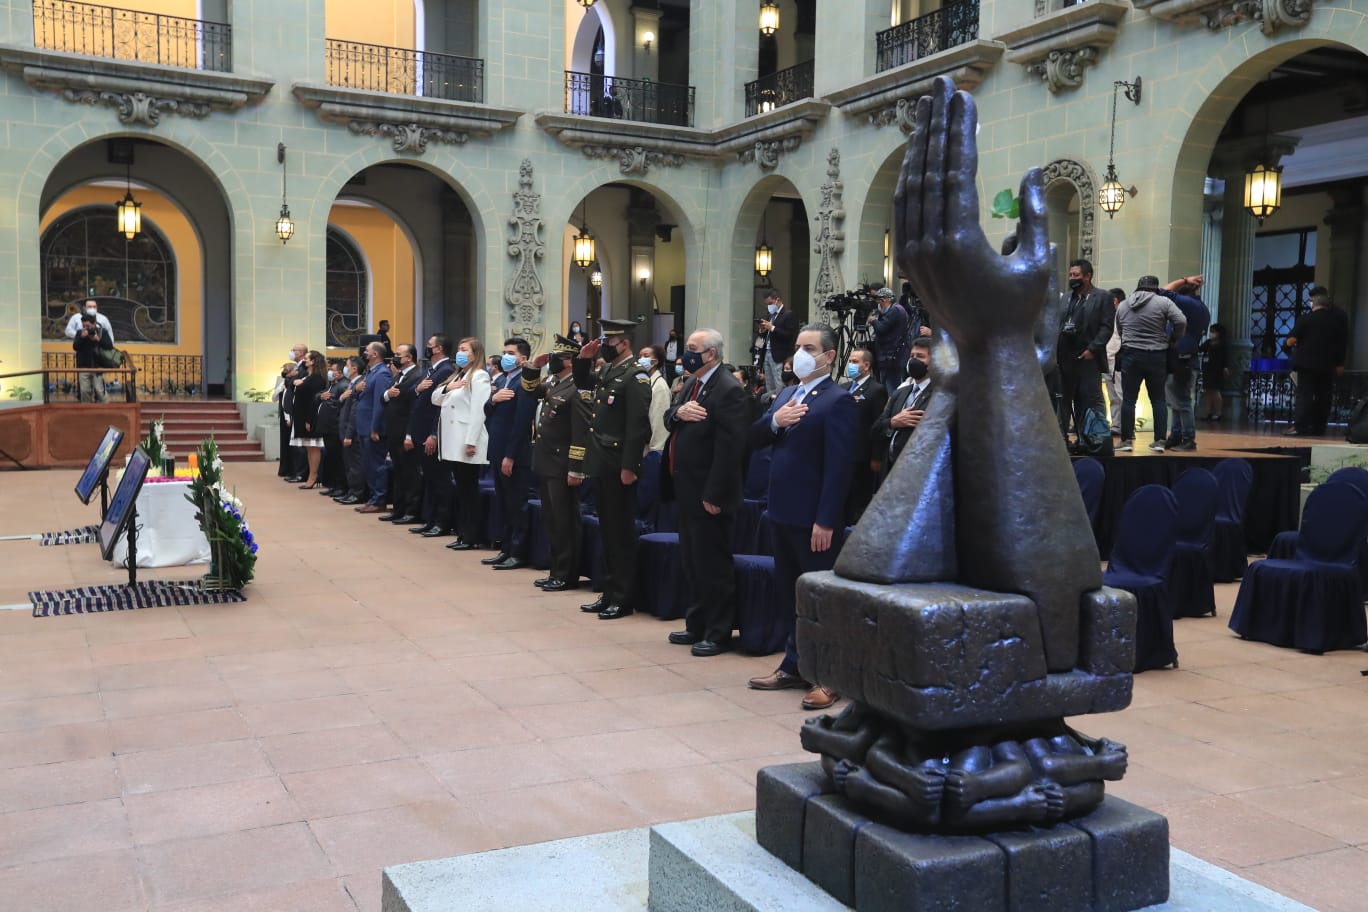 Autoridades del Gobierno conmemoraron este miércoles 29 de diciembre el 25 aniversario de la firma de la paz en Guatemala. (Foto Prensa Libre: Byron García)